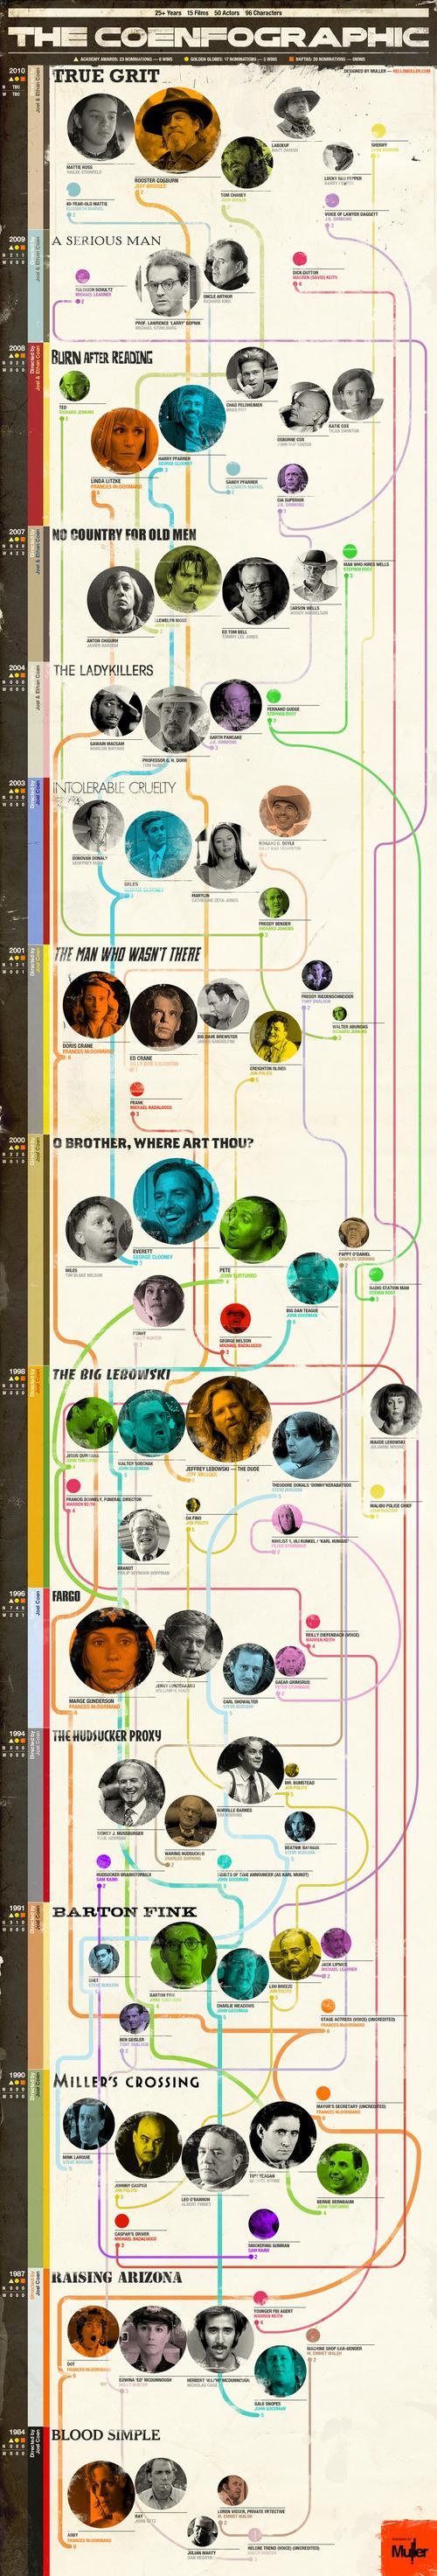 El Coenfográfico: Una curiosa guía gráfica sobre el cine de los hermanos Coen